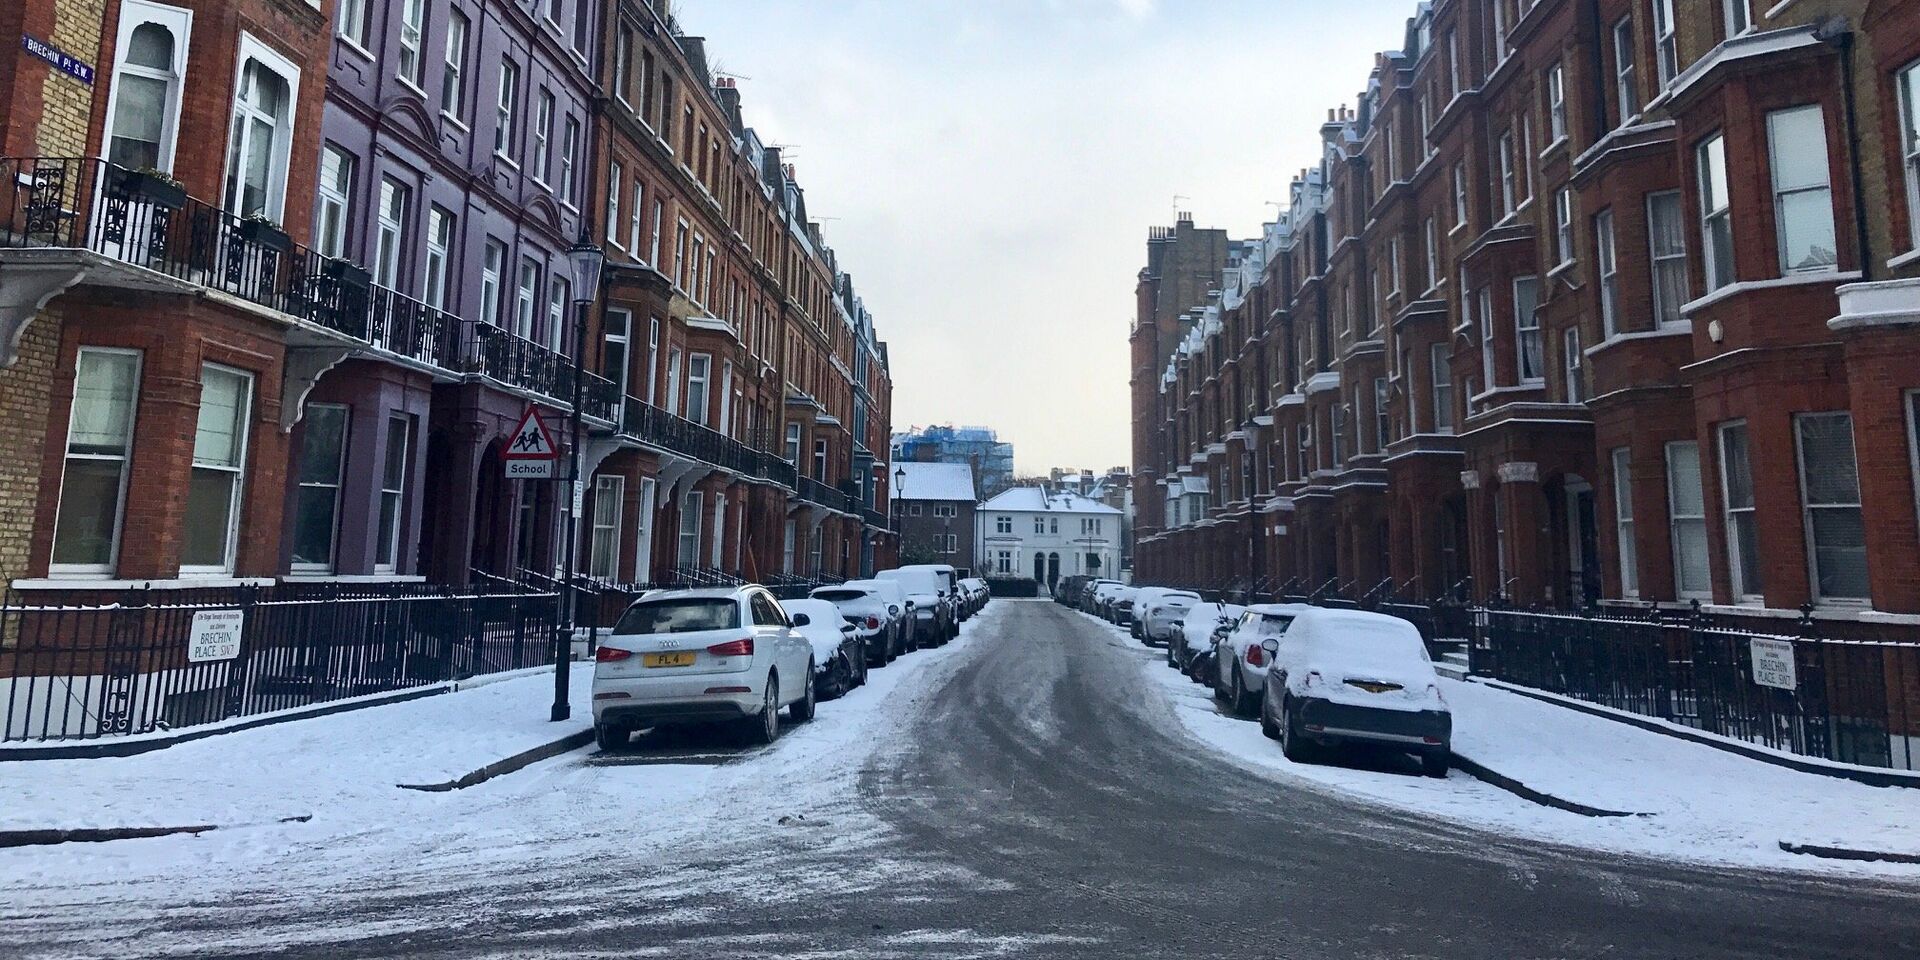 Снег, выпавший на улицах Лондона. 28 февраля 2018 - ИноСМИ, 1920, 13.10.2022